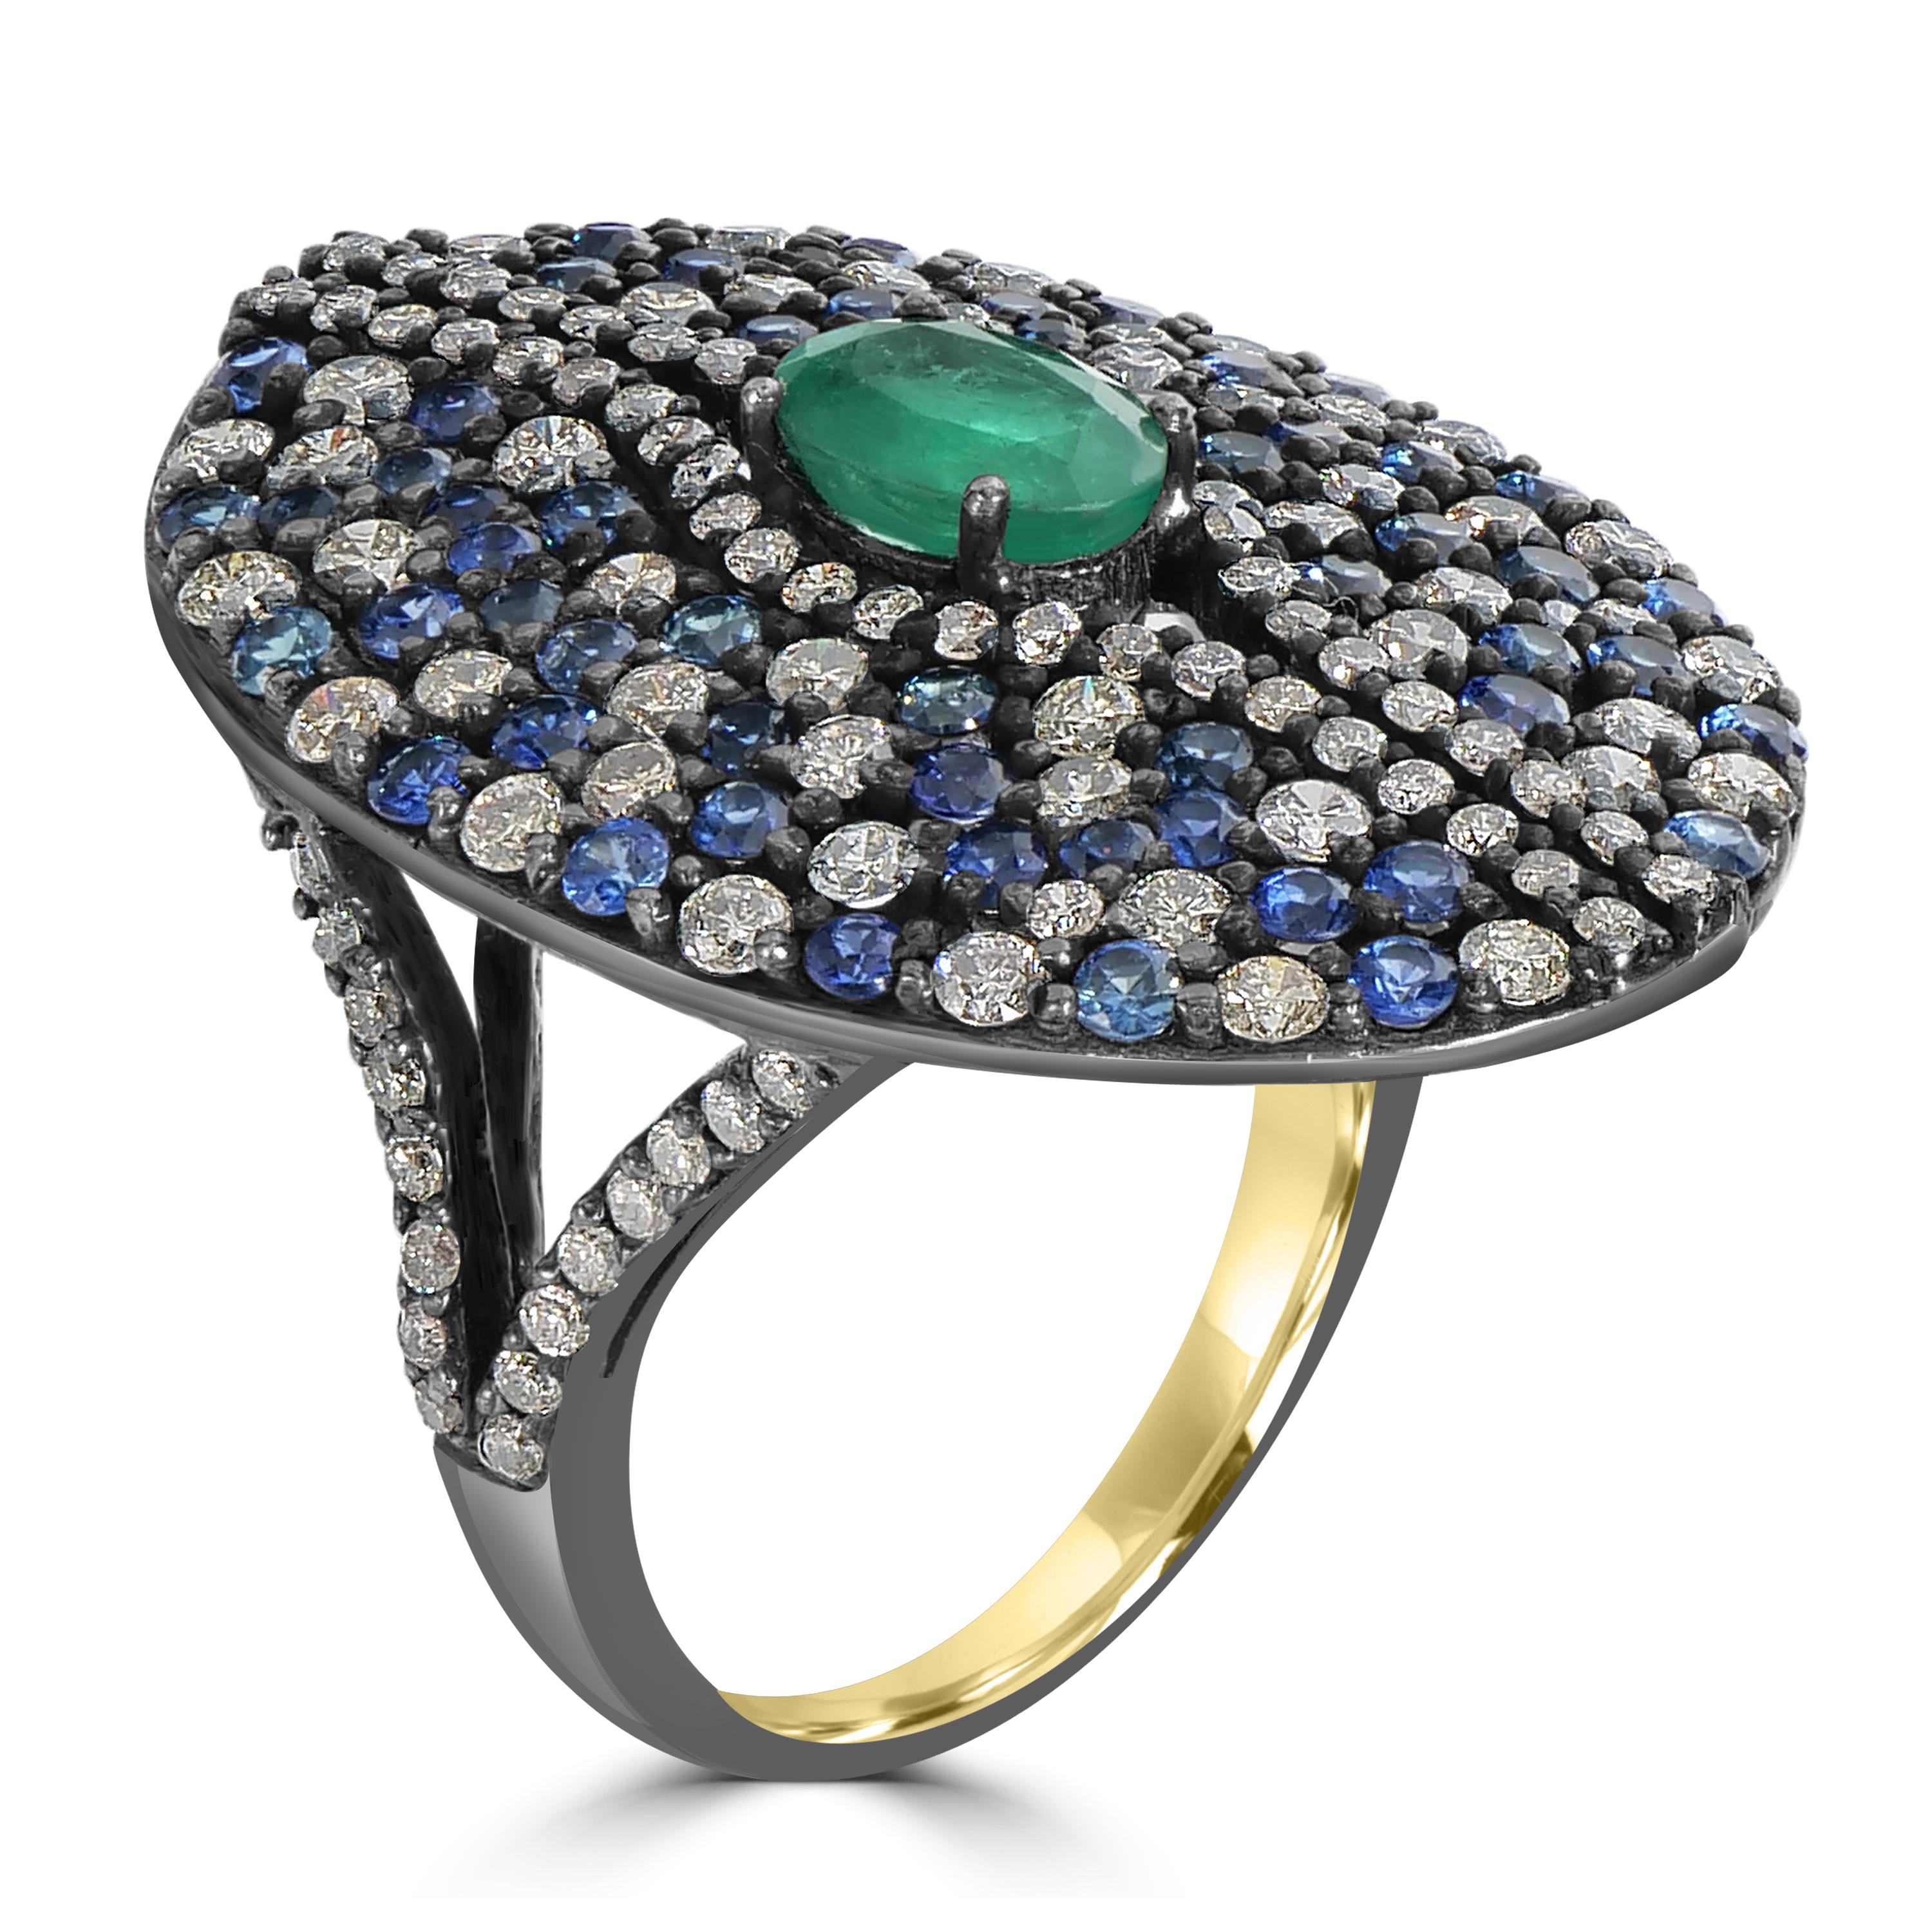 Treten Sie ein in die Welt der zeitlosen Eleganz mit der Victorian 4.3 Cttw. Smaragd-, Saphir- und Diamantring mit geteiltem Schaft - eine Verschmelzung von Kunstfertigkeit und Raffinesse in 18 Karat Gold und schwarzem Rhodiumsilber. Im Mittelpunkt